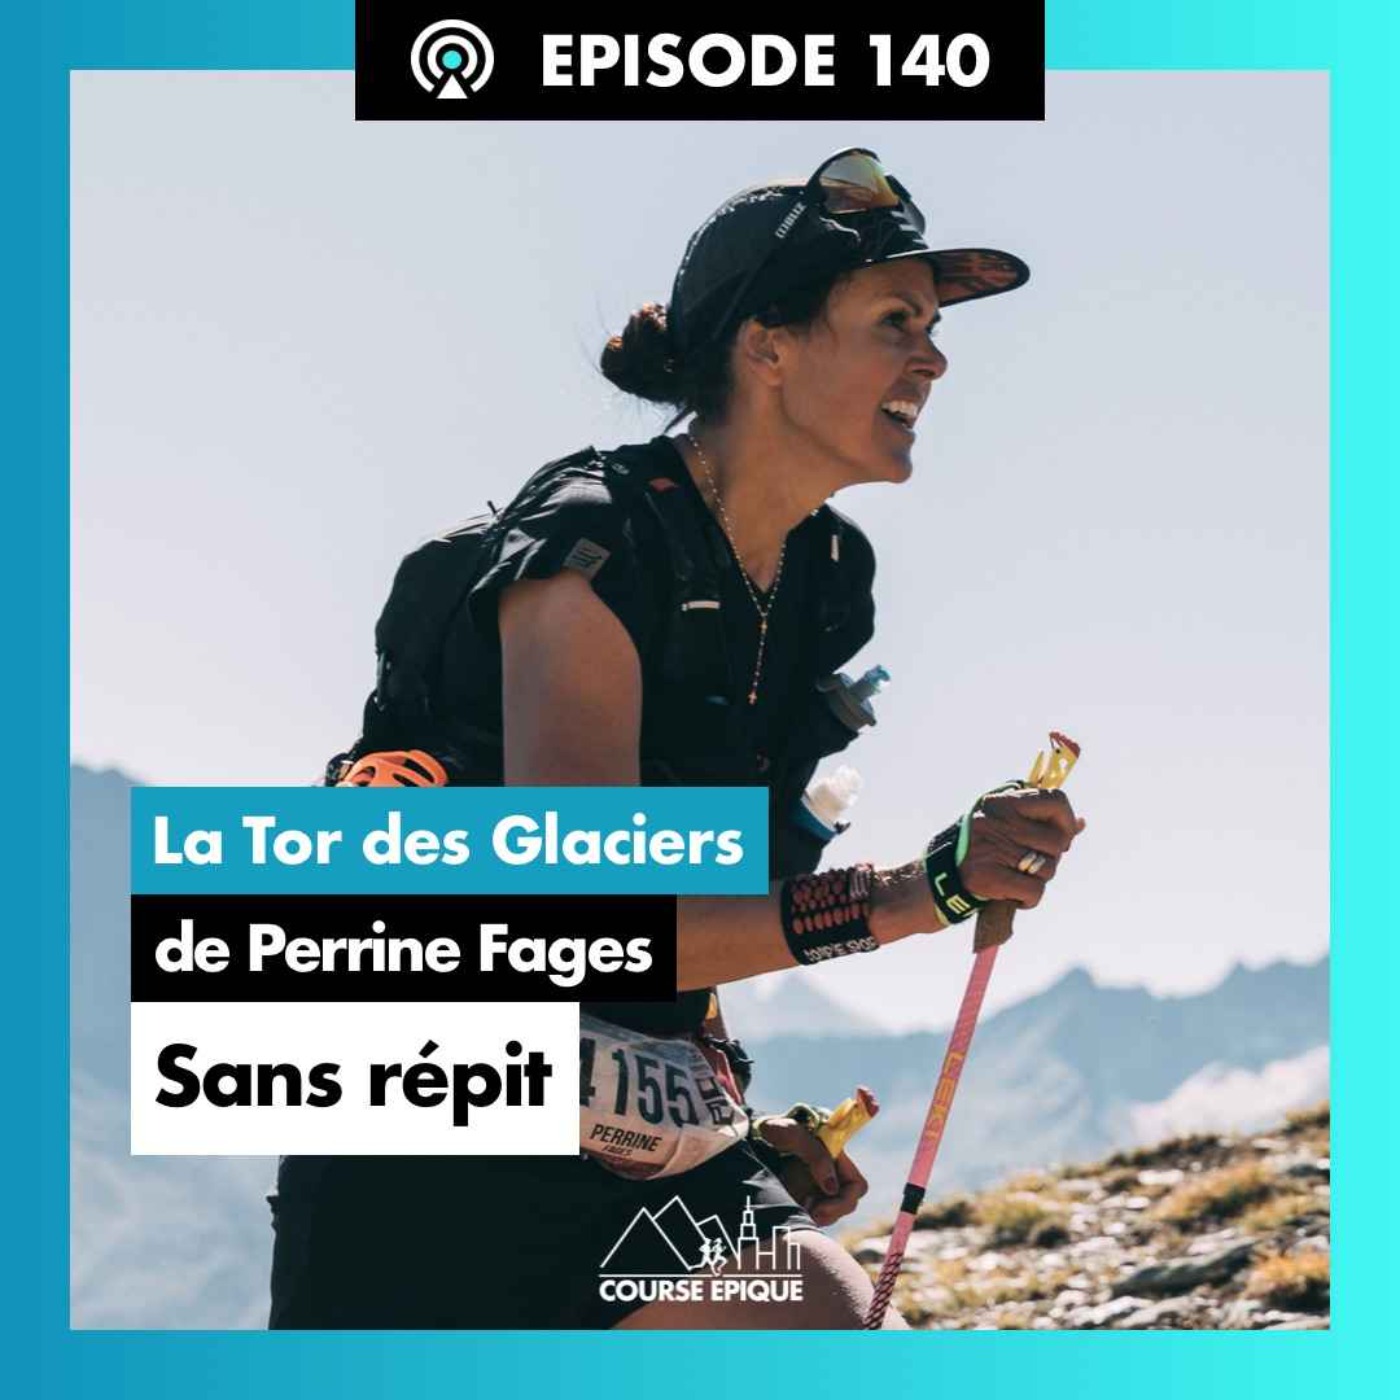 #140 Perrine Fages "A l'assaut d'un redoutable ultra-trail de 450km et 32000 mètres de D+" - Le Tor des Glaciers